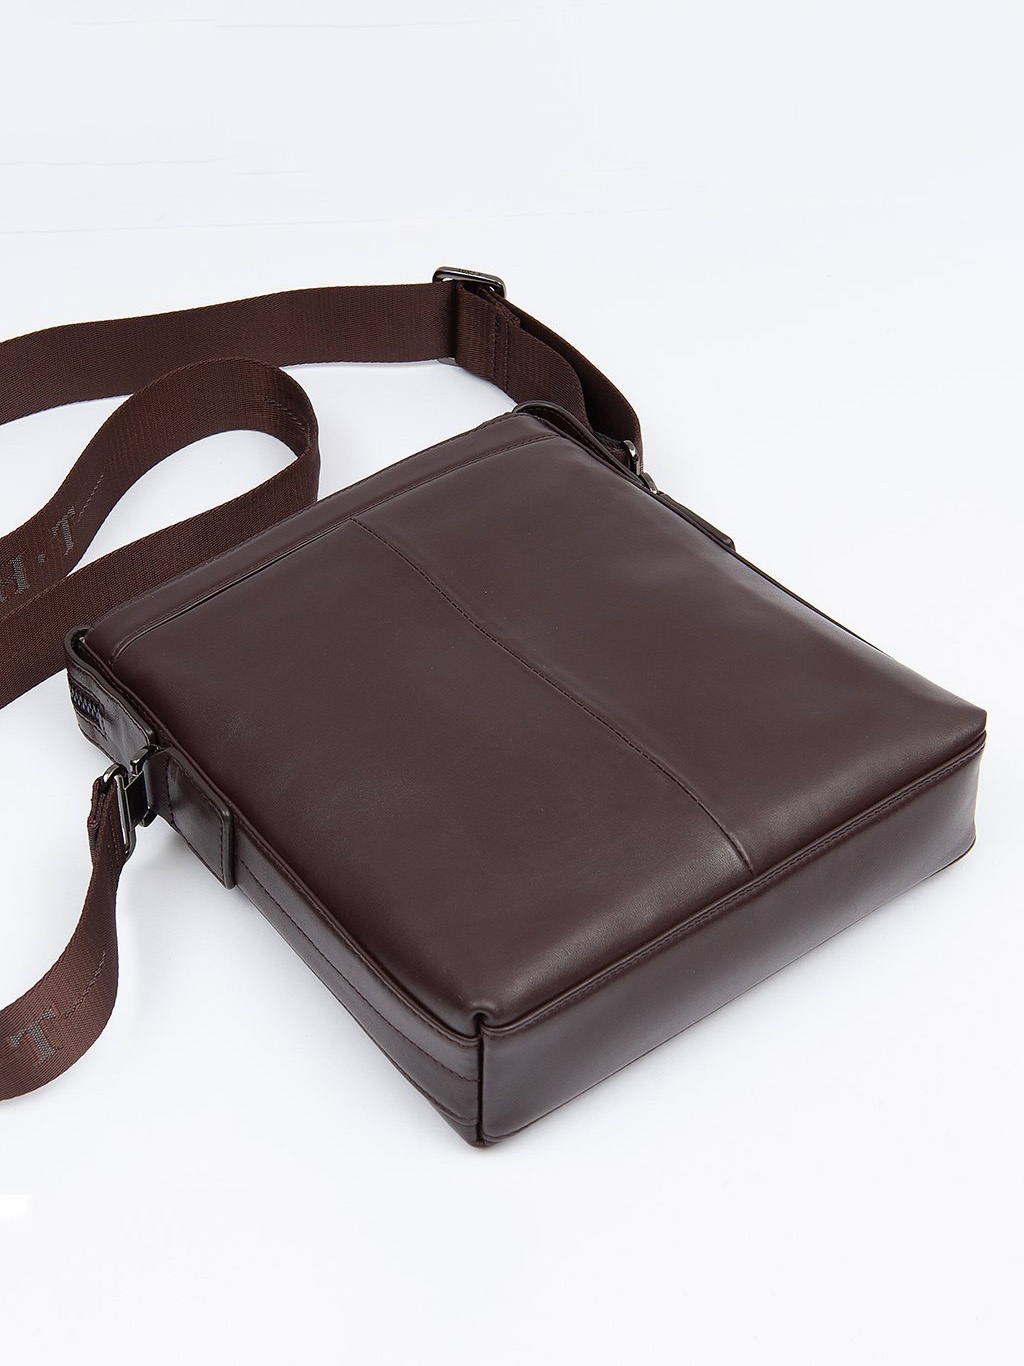 Фото Кожаная мужская сумка через плечо коричневого цвета Сумки через плечо